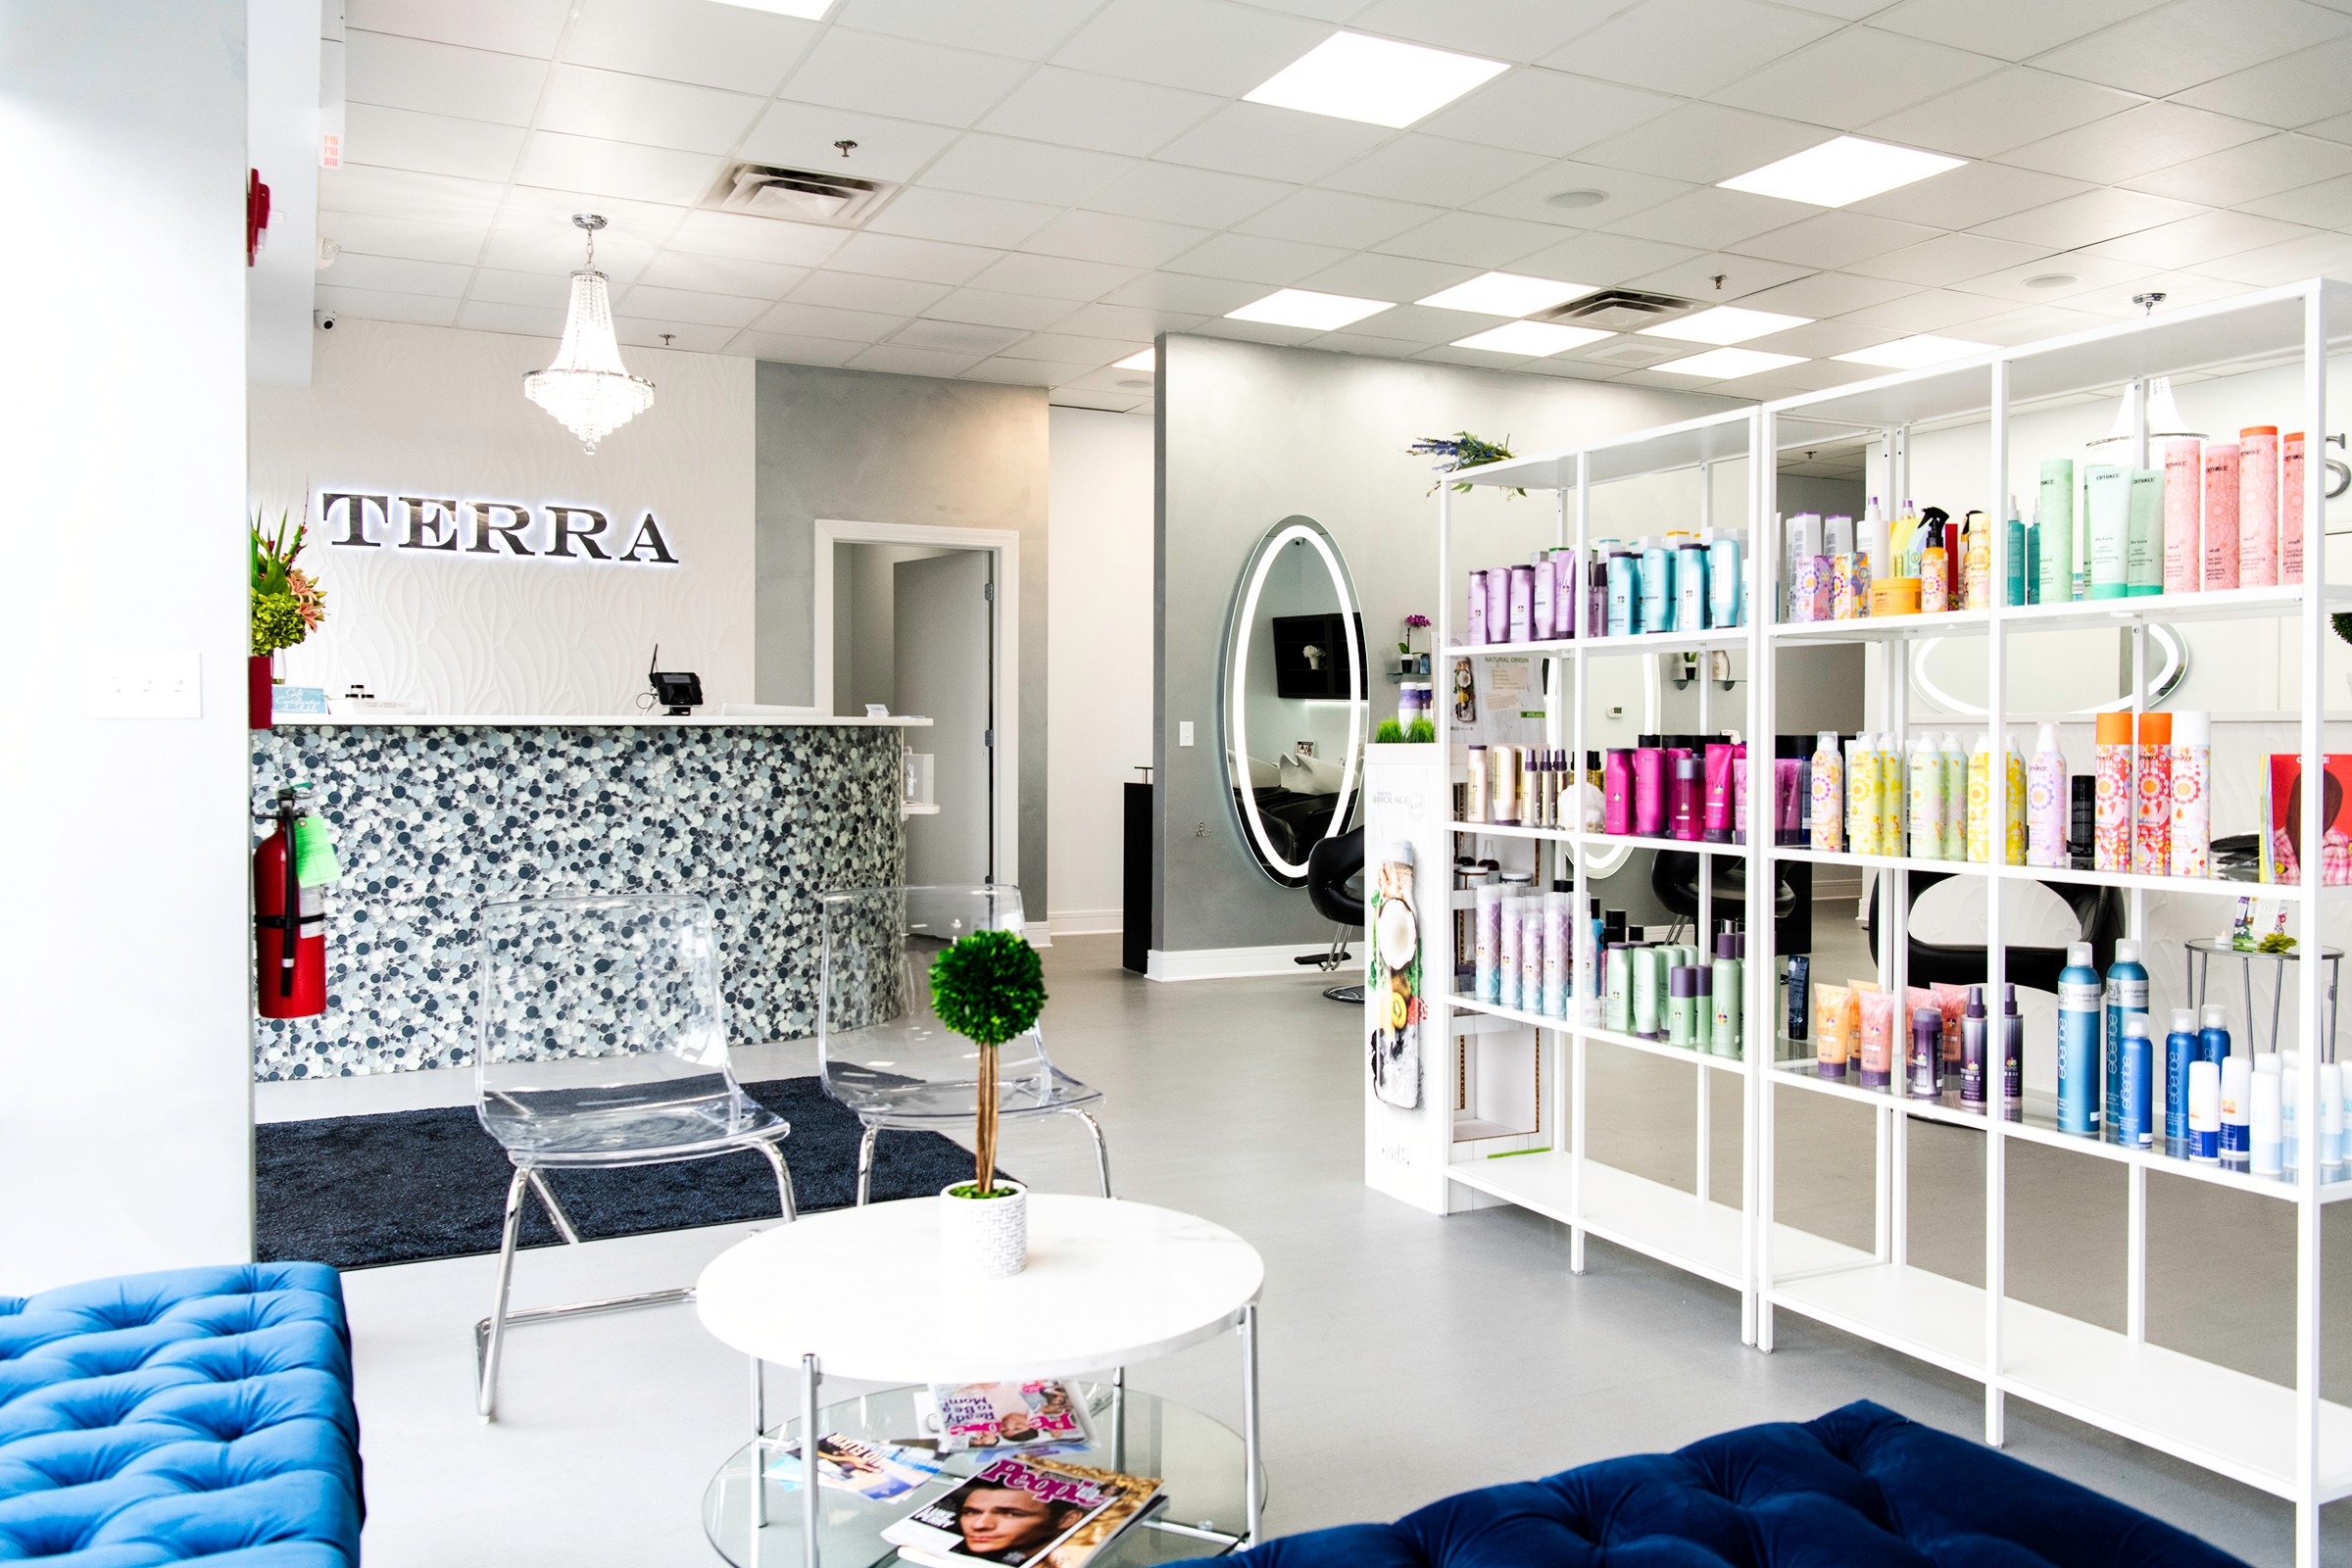 Terra Salon and Spa